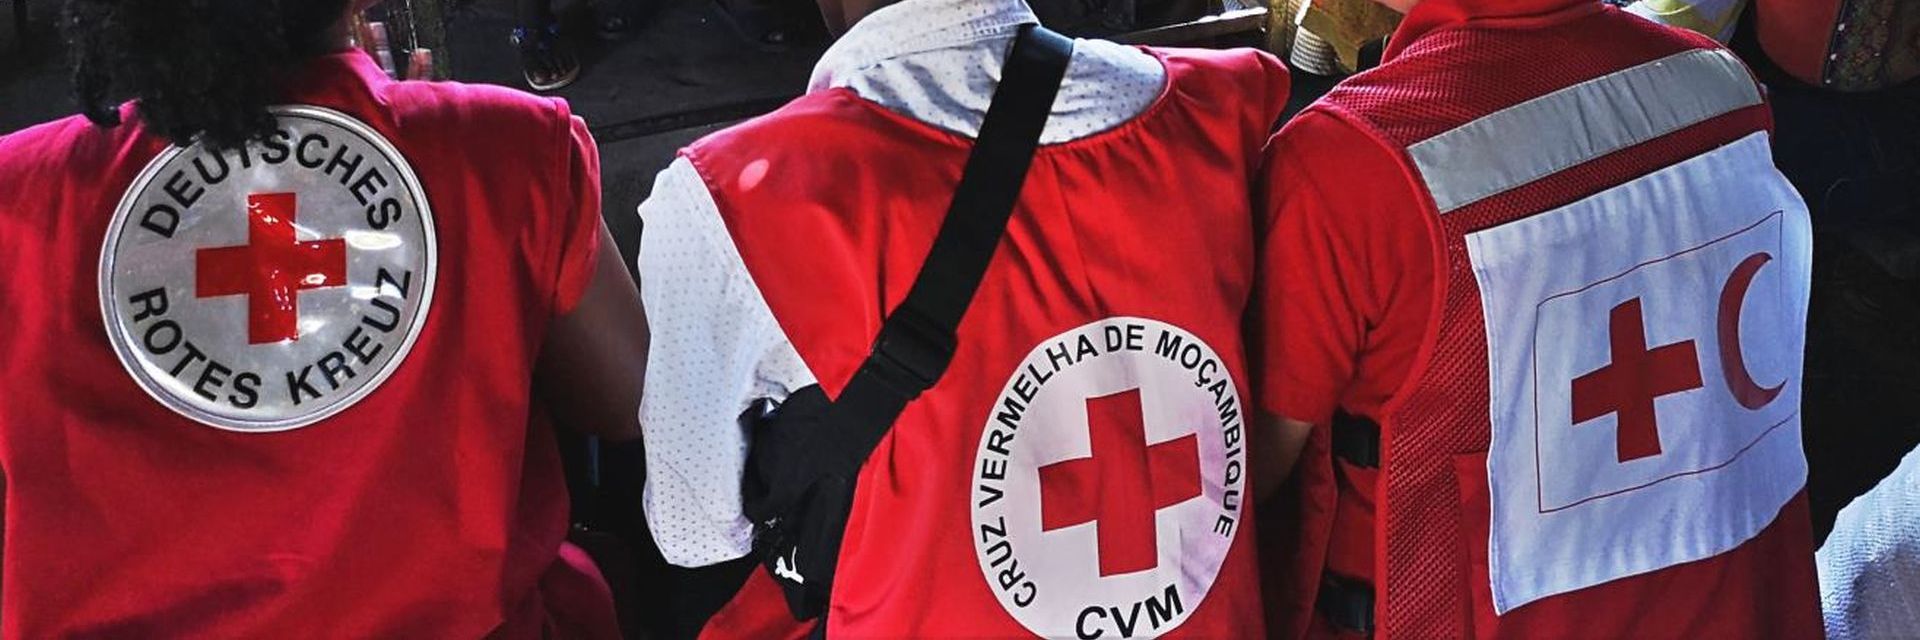 German Red Cross Trainings and volunteers 